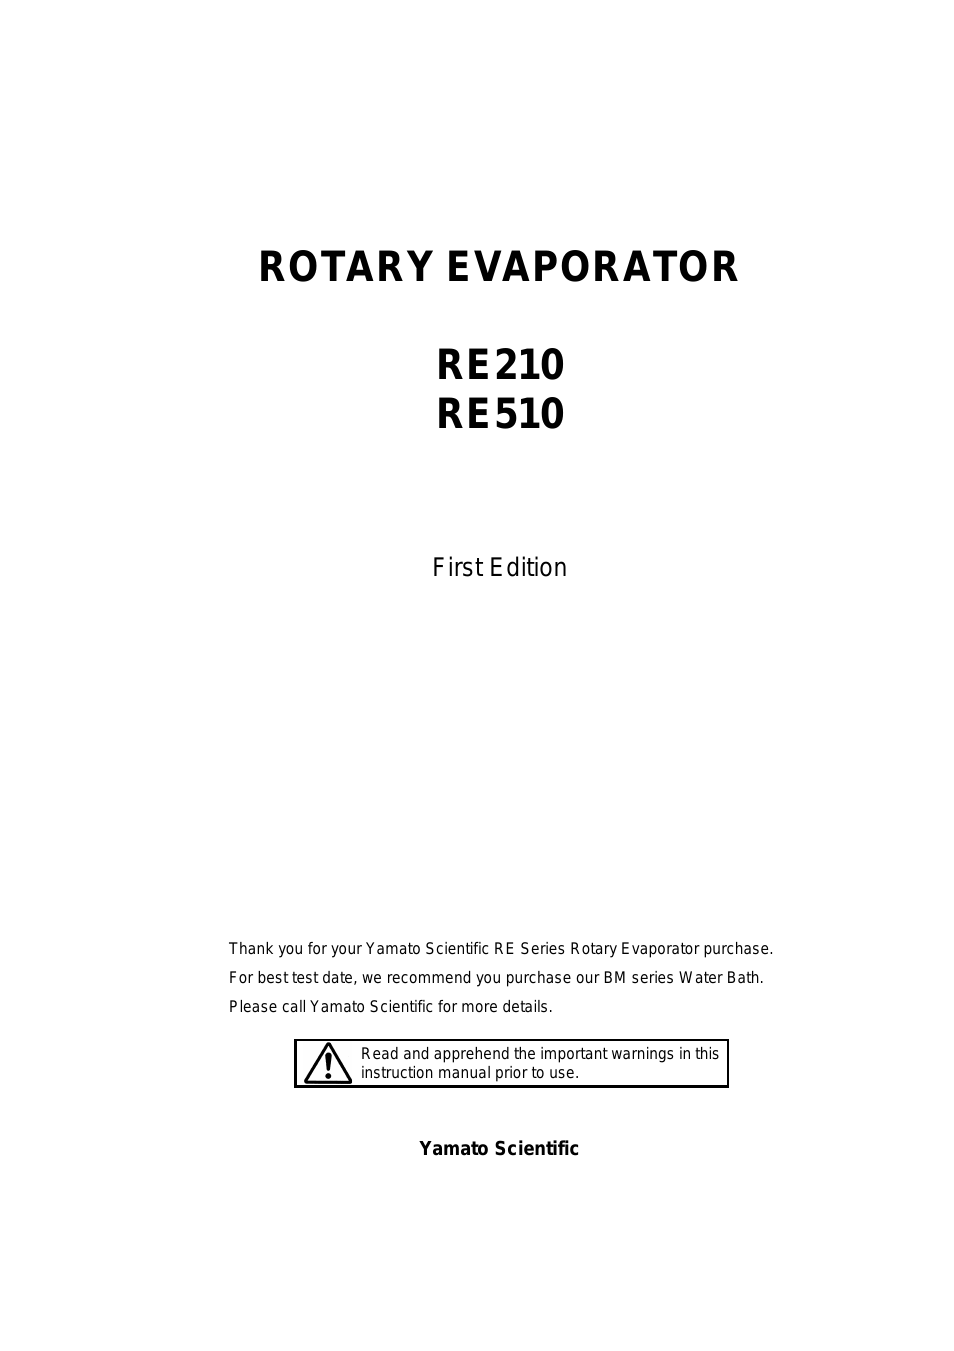 RE210 Evaporators, Rotary